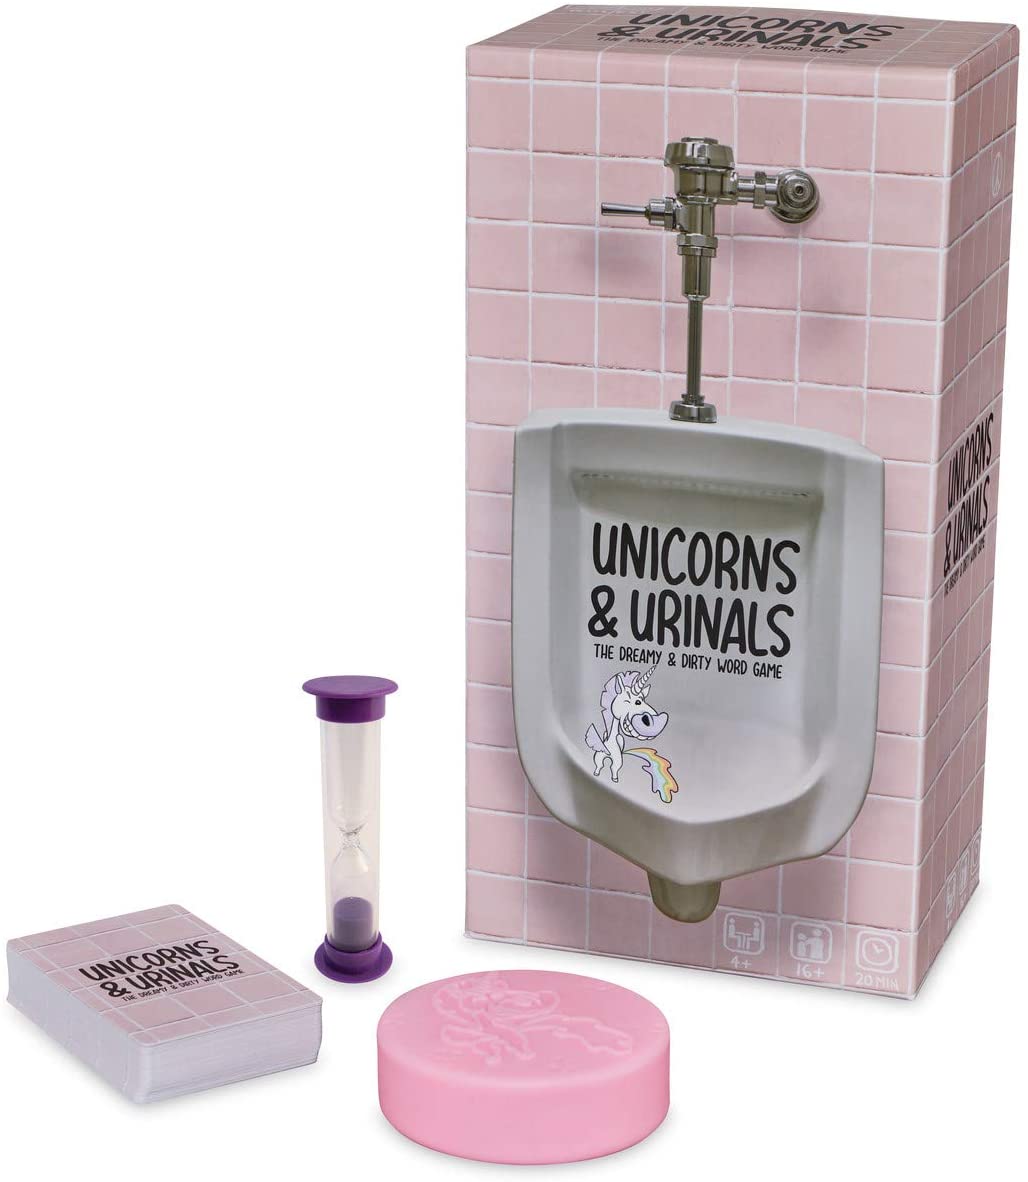 Unicorns and Urinals